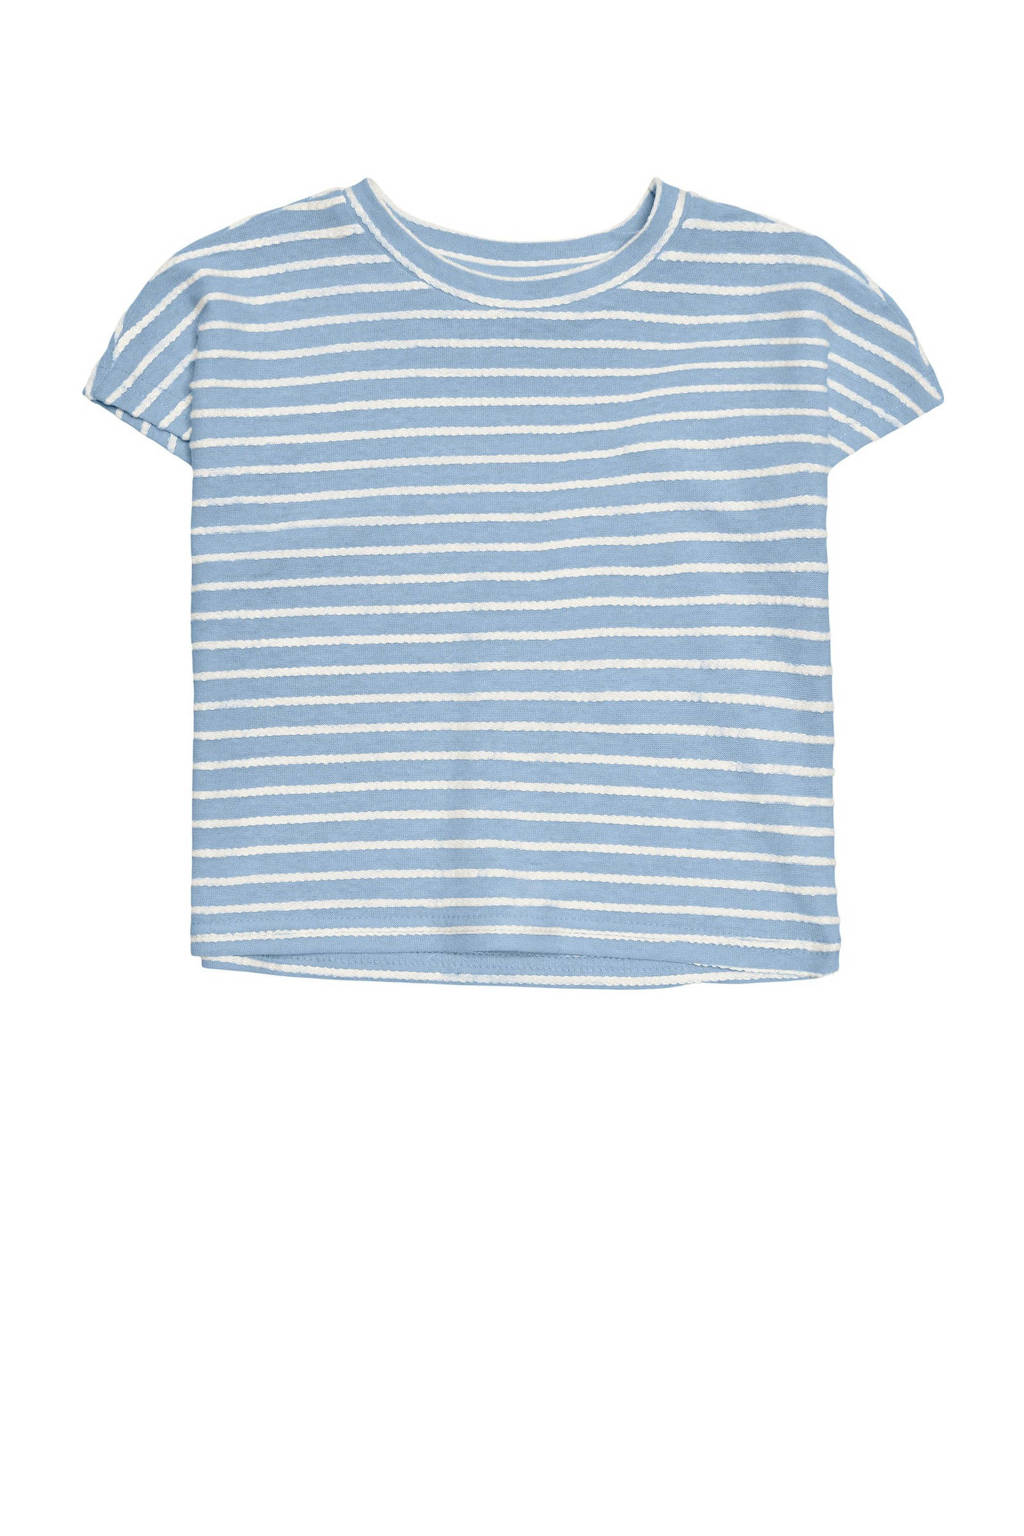 KIDS ONLY MINI gestreept T-shirt KMGELLY lichtblauw/wit